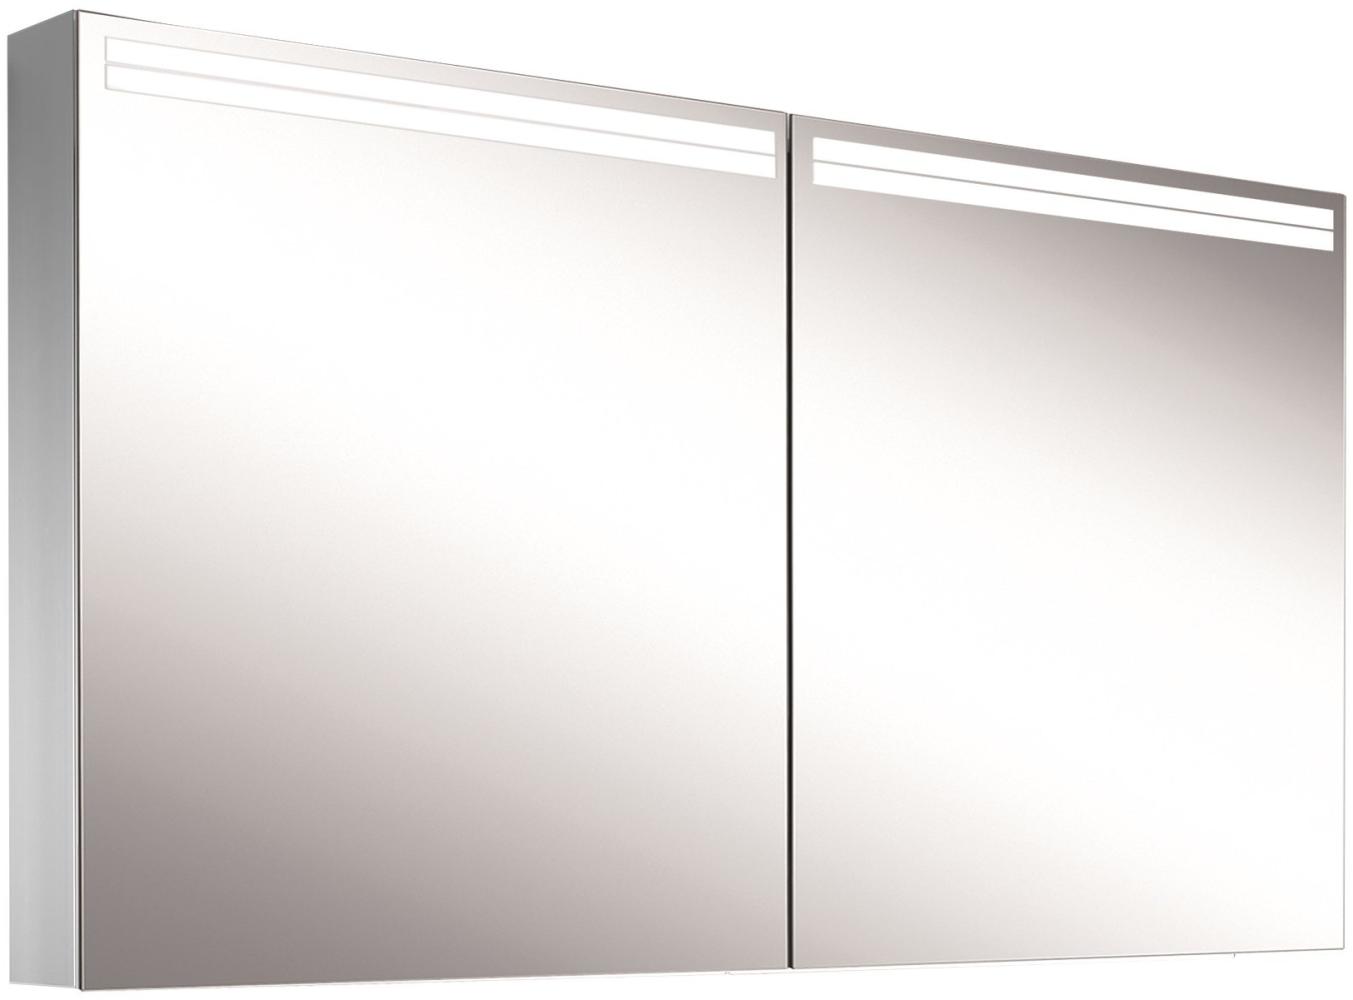 Schneider ARANGALINE LED Lichtspiegelschrank, 2 Doppelspiegeltüren, 140x70x12cm, 160. 540. 02. 41, Ausführung: EU-Norm/Korpus silber eloxiert - 160. 540. 02. 50 Bild 1